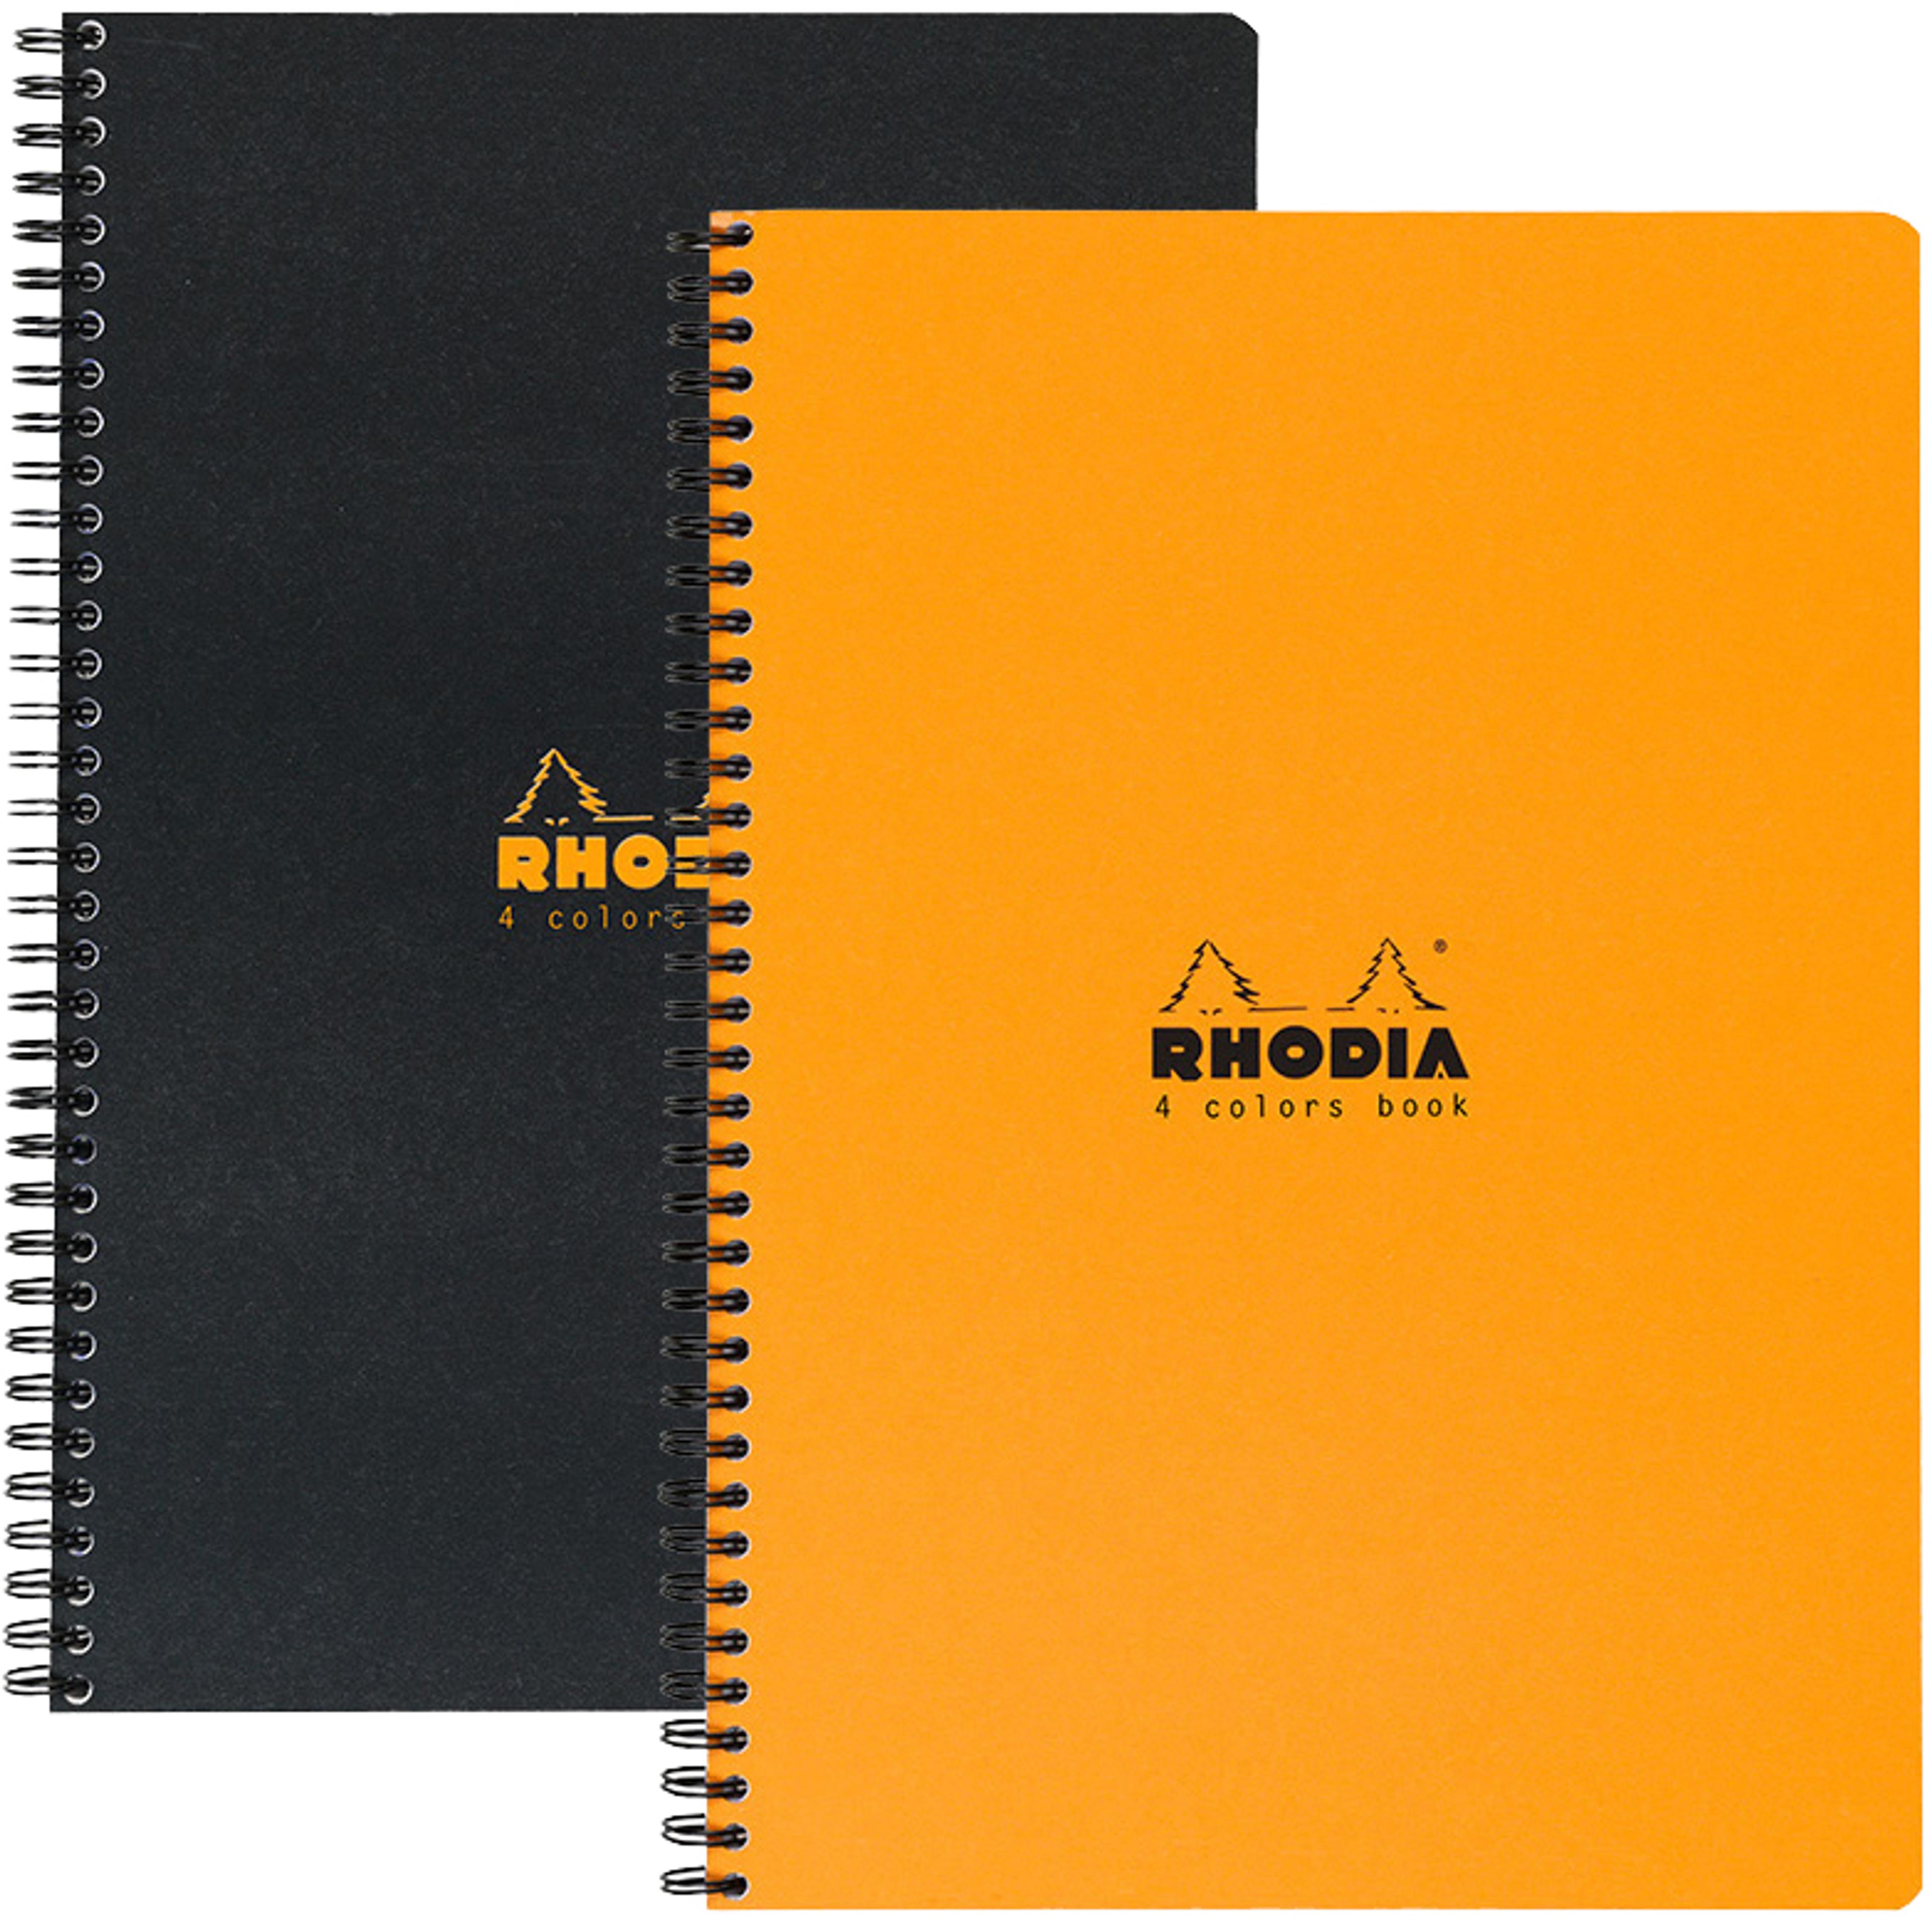 Branded notebooks